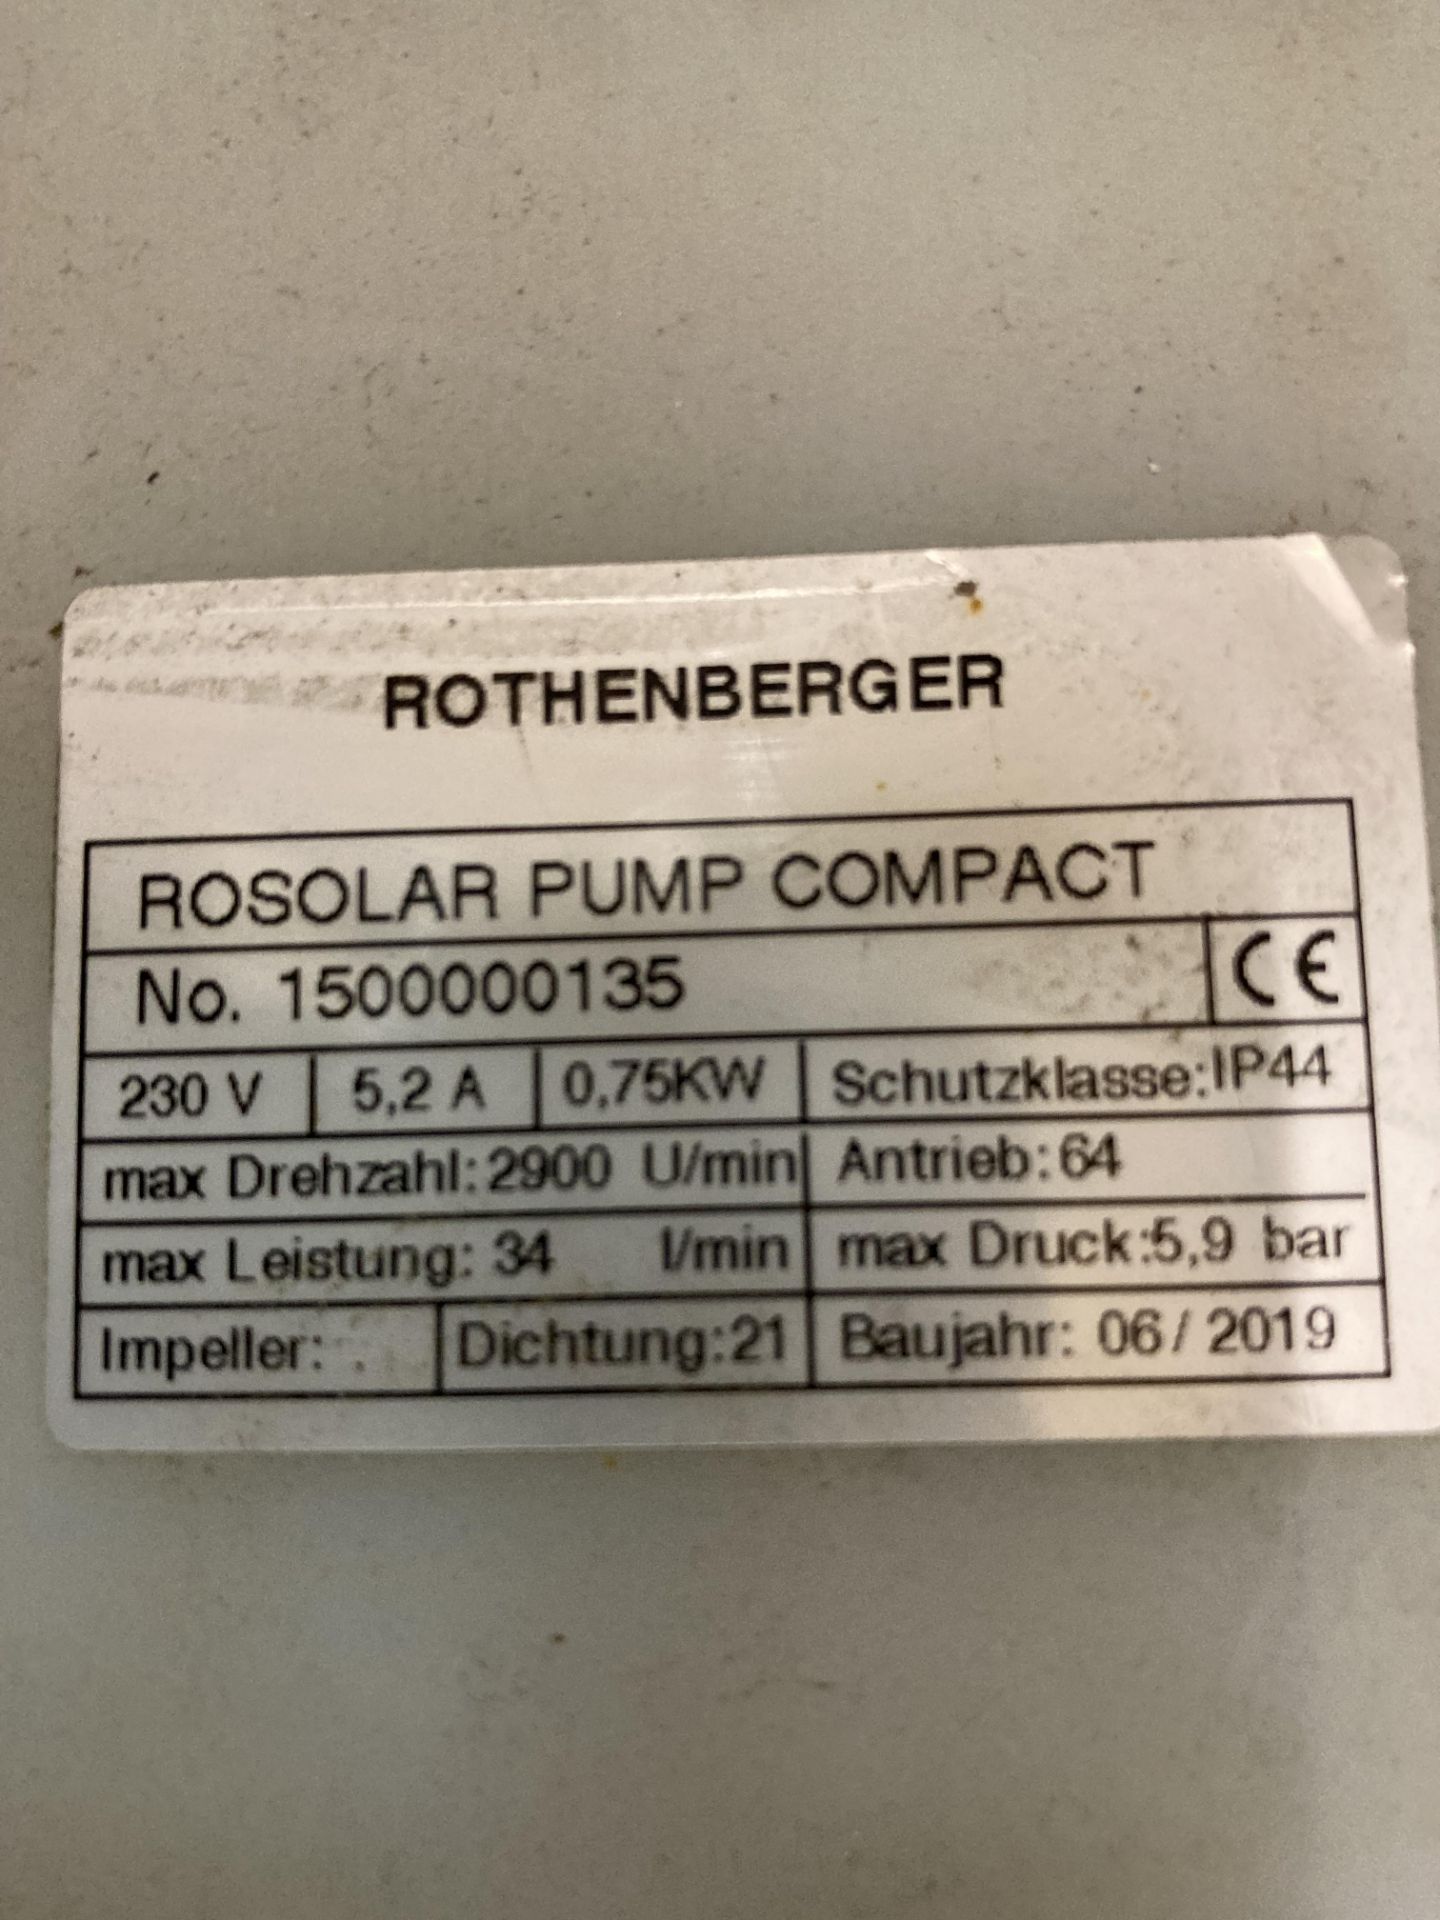 Rothenberger Rosolar solar heating flushing pump 240v (motor jammed) (saleroom location: Y01 FLOOR) - Image 2 of 2